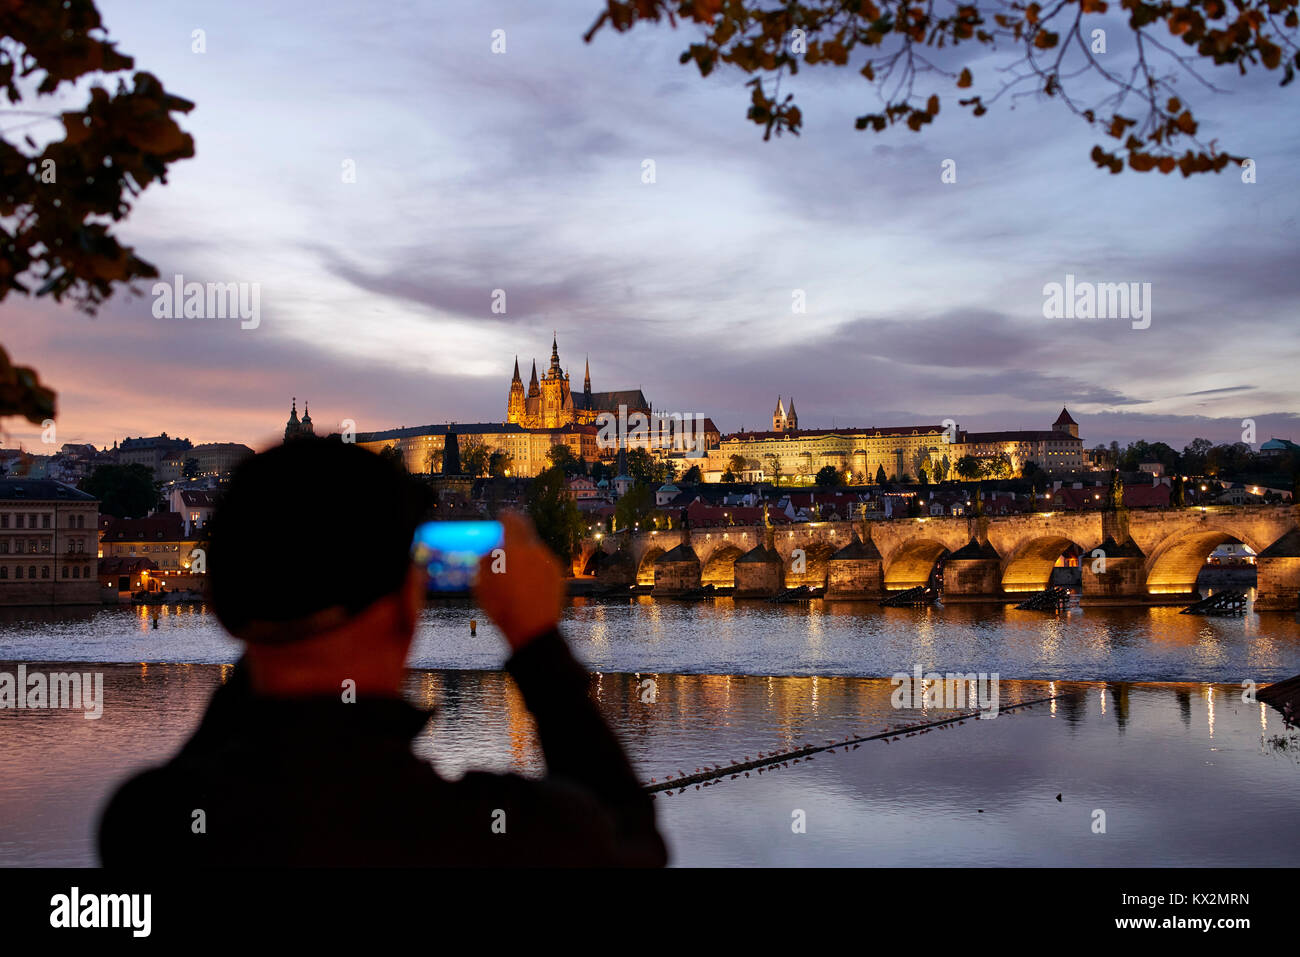 Vue sur le château de Prague dans la lumière du soir vue sur la Vltava, à partir de la rive du fleuve ; prendre des photos touristiques avec téléphone appareil photo en premier plan Banque D'Images